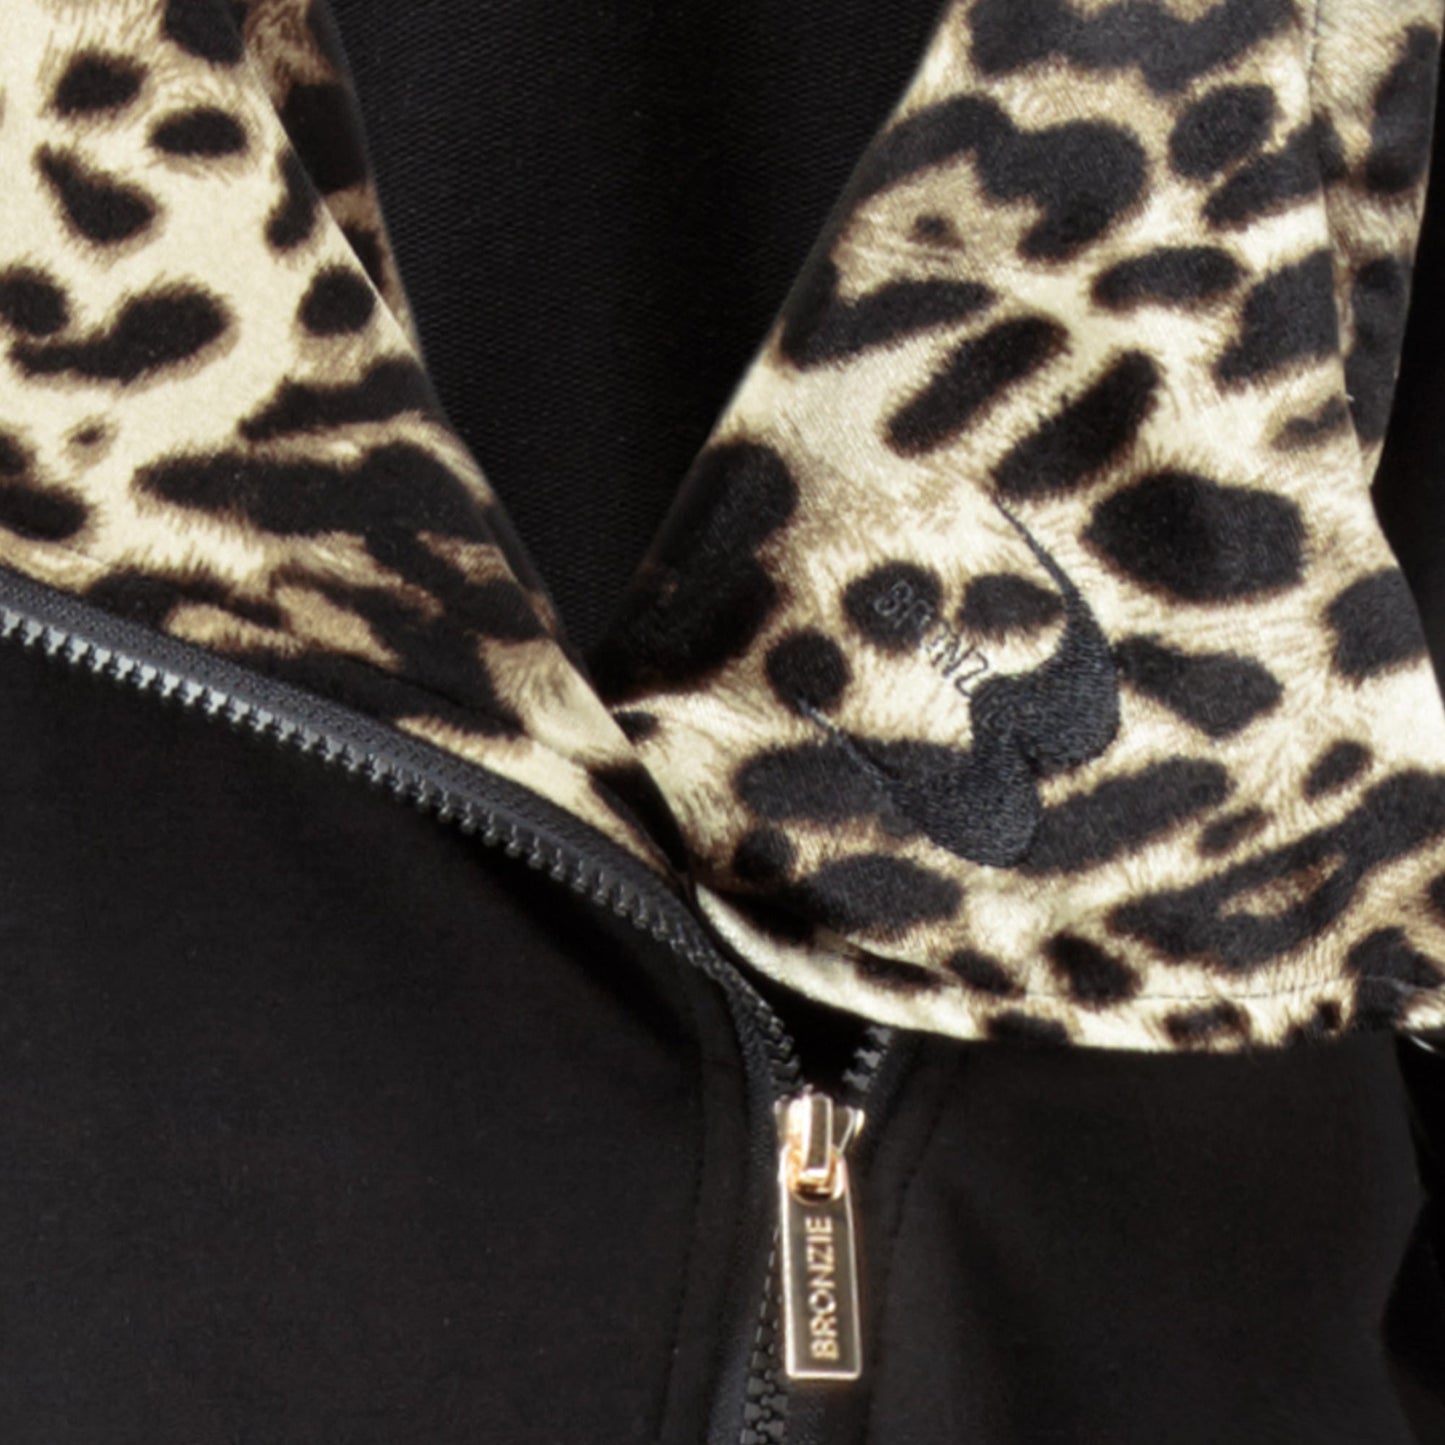 After Fake Tan Jumpsuit (Leopard) (Detail - Zip)